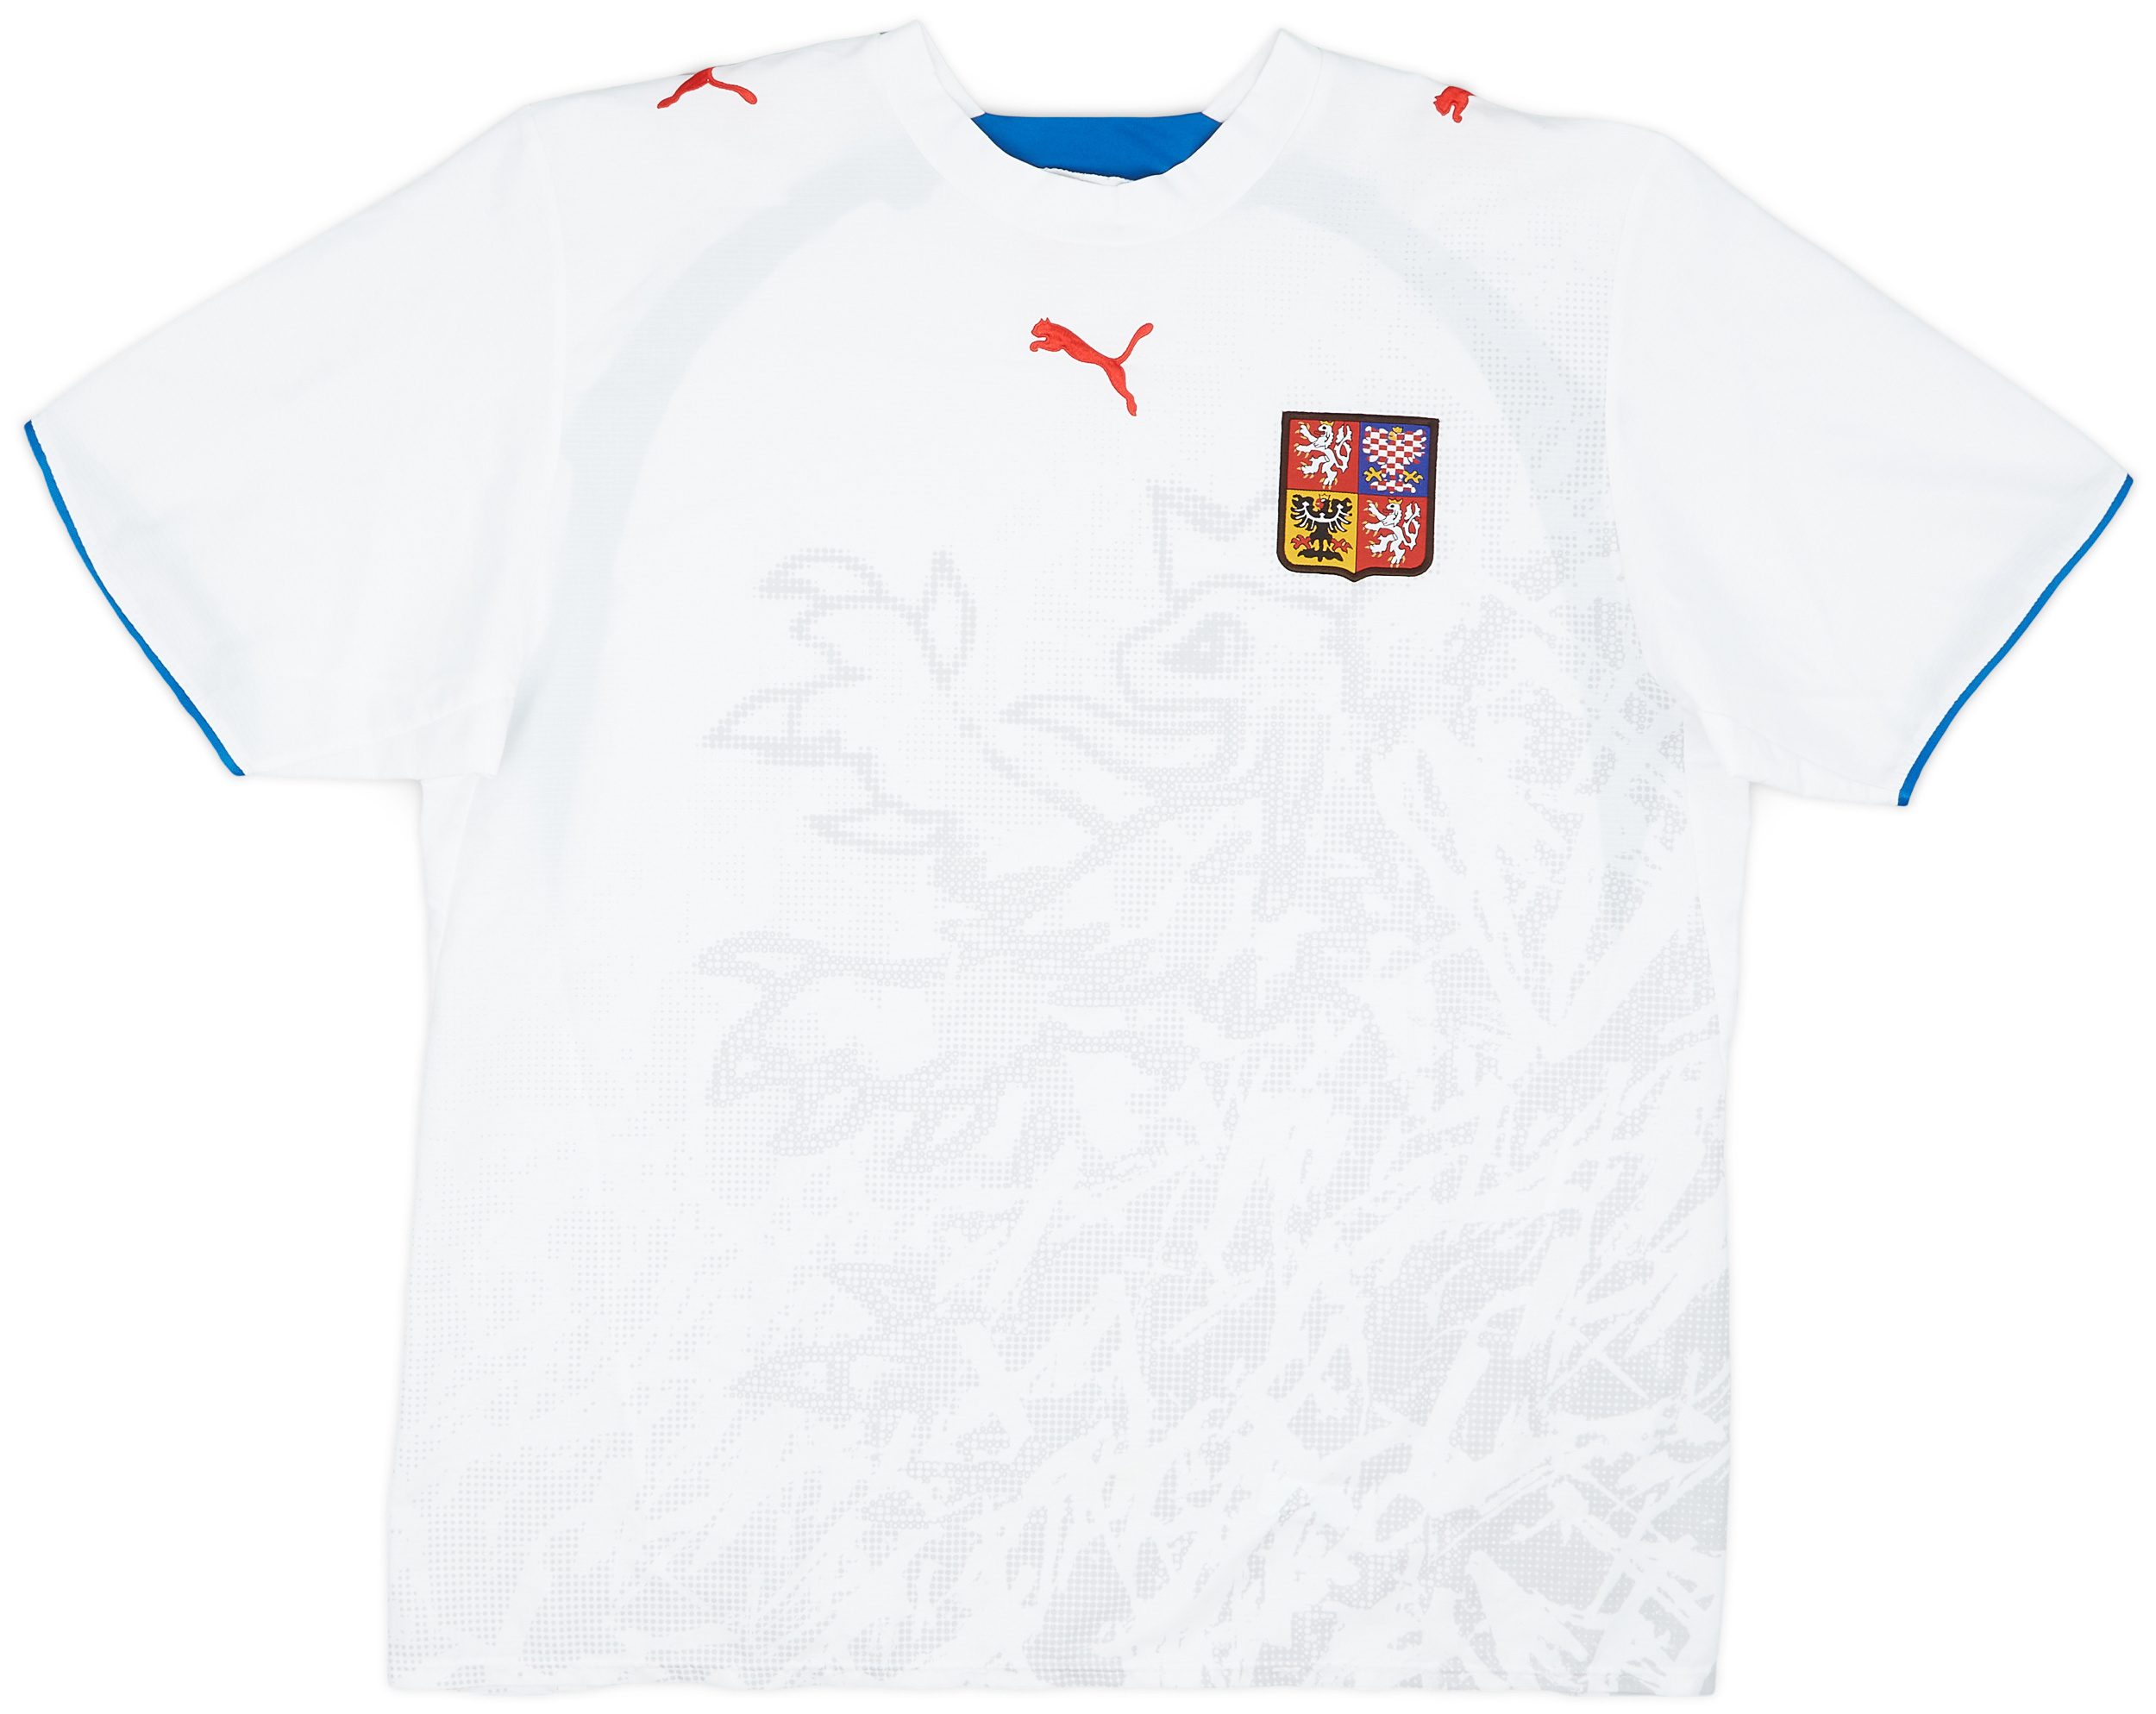 2006-08 Czech Republic Away Shirt - 9/10 - ()